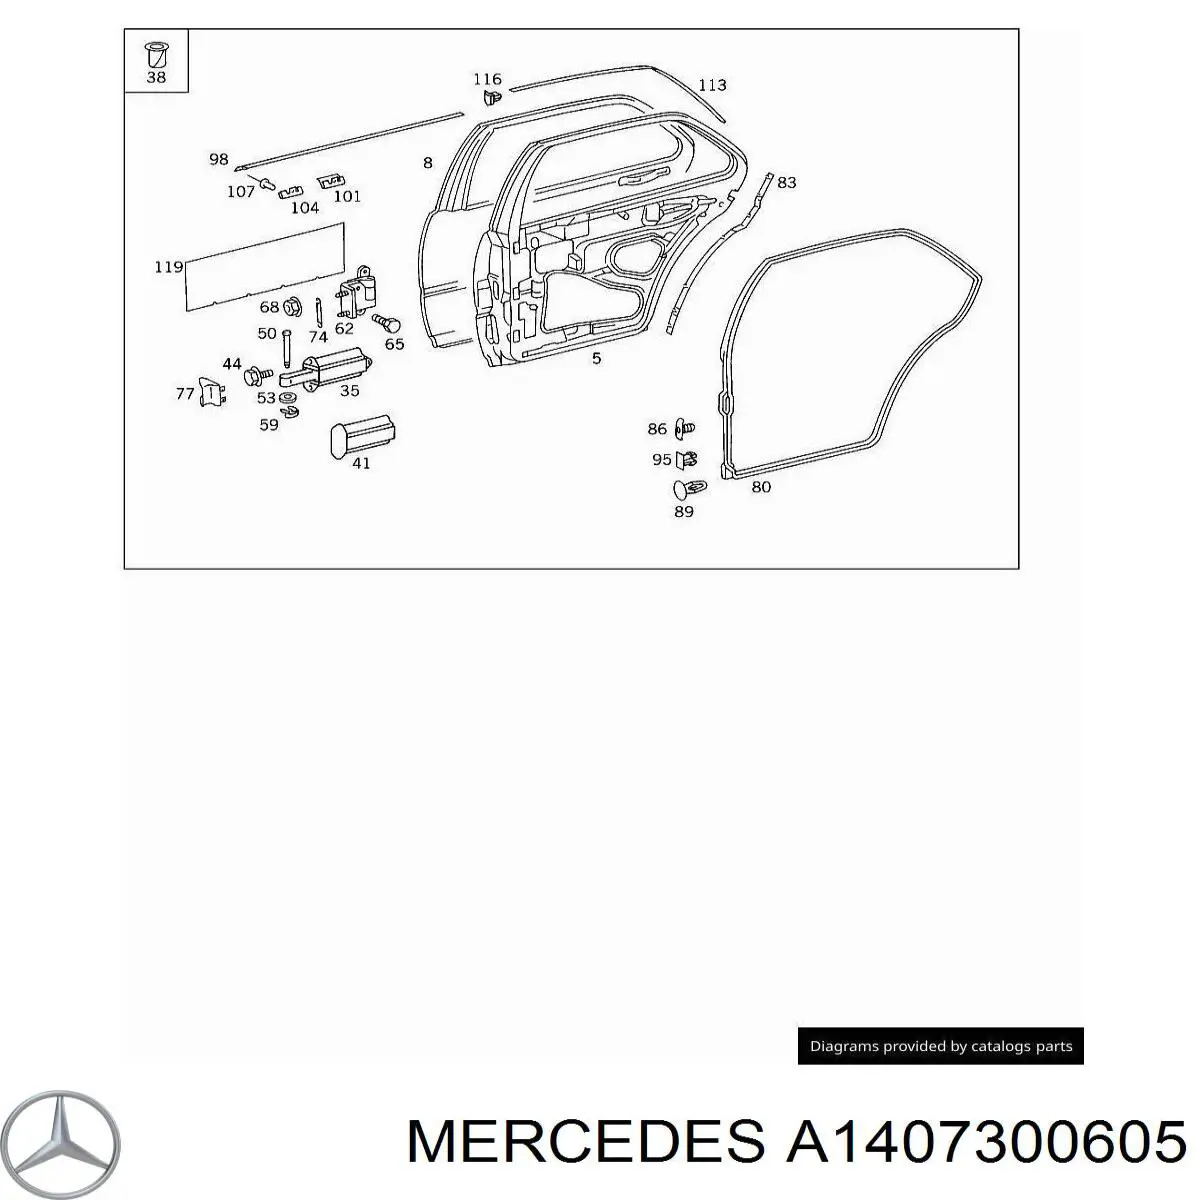 A1407300605 Mercedes puerta trasera derecha